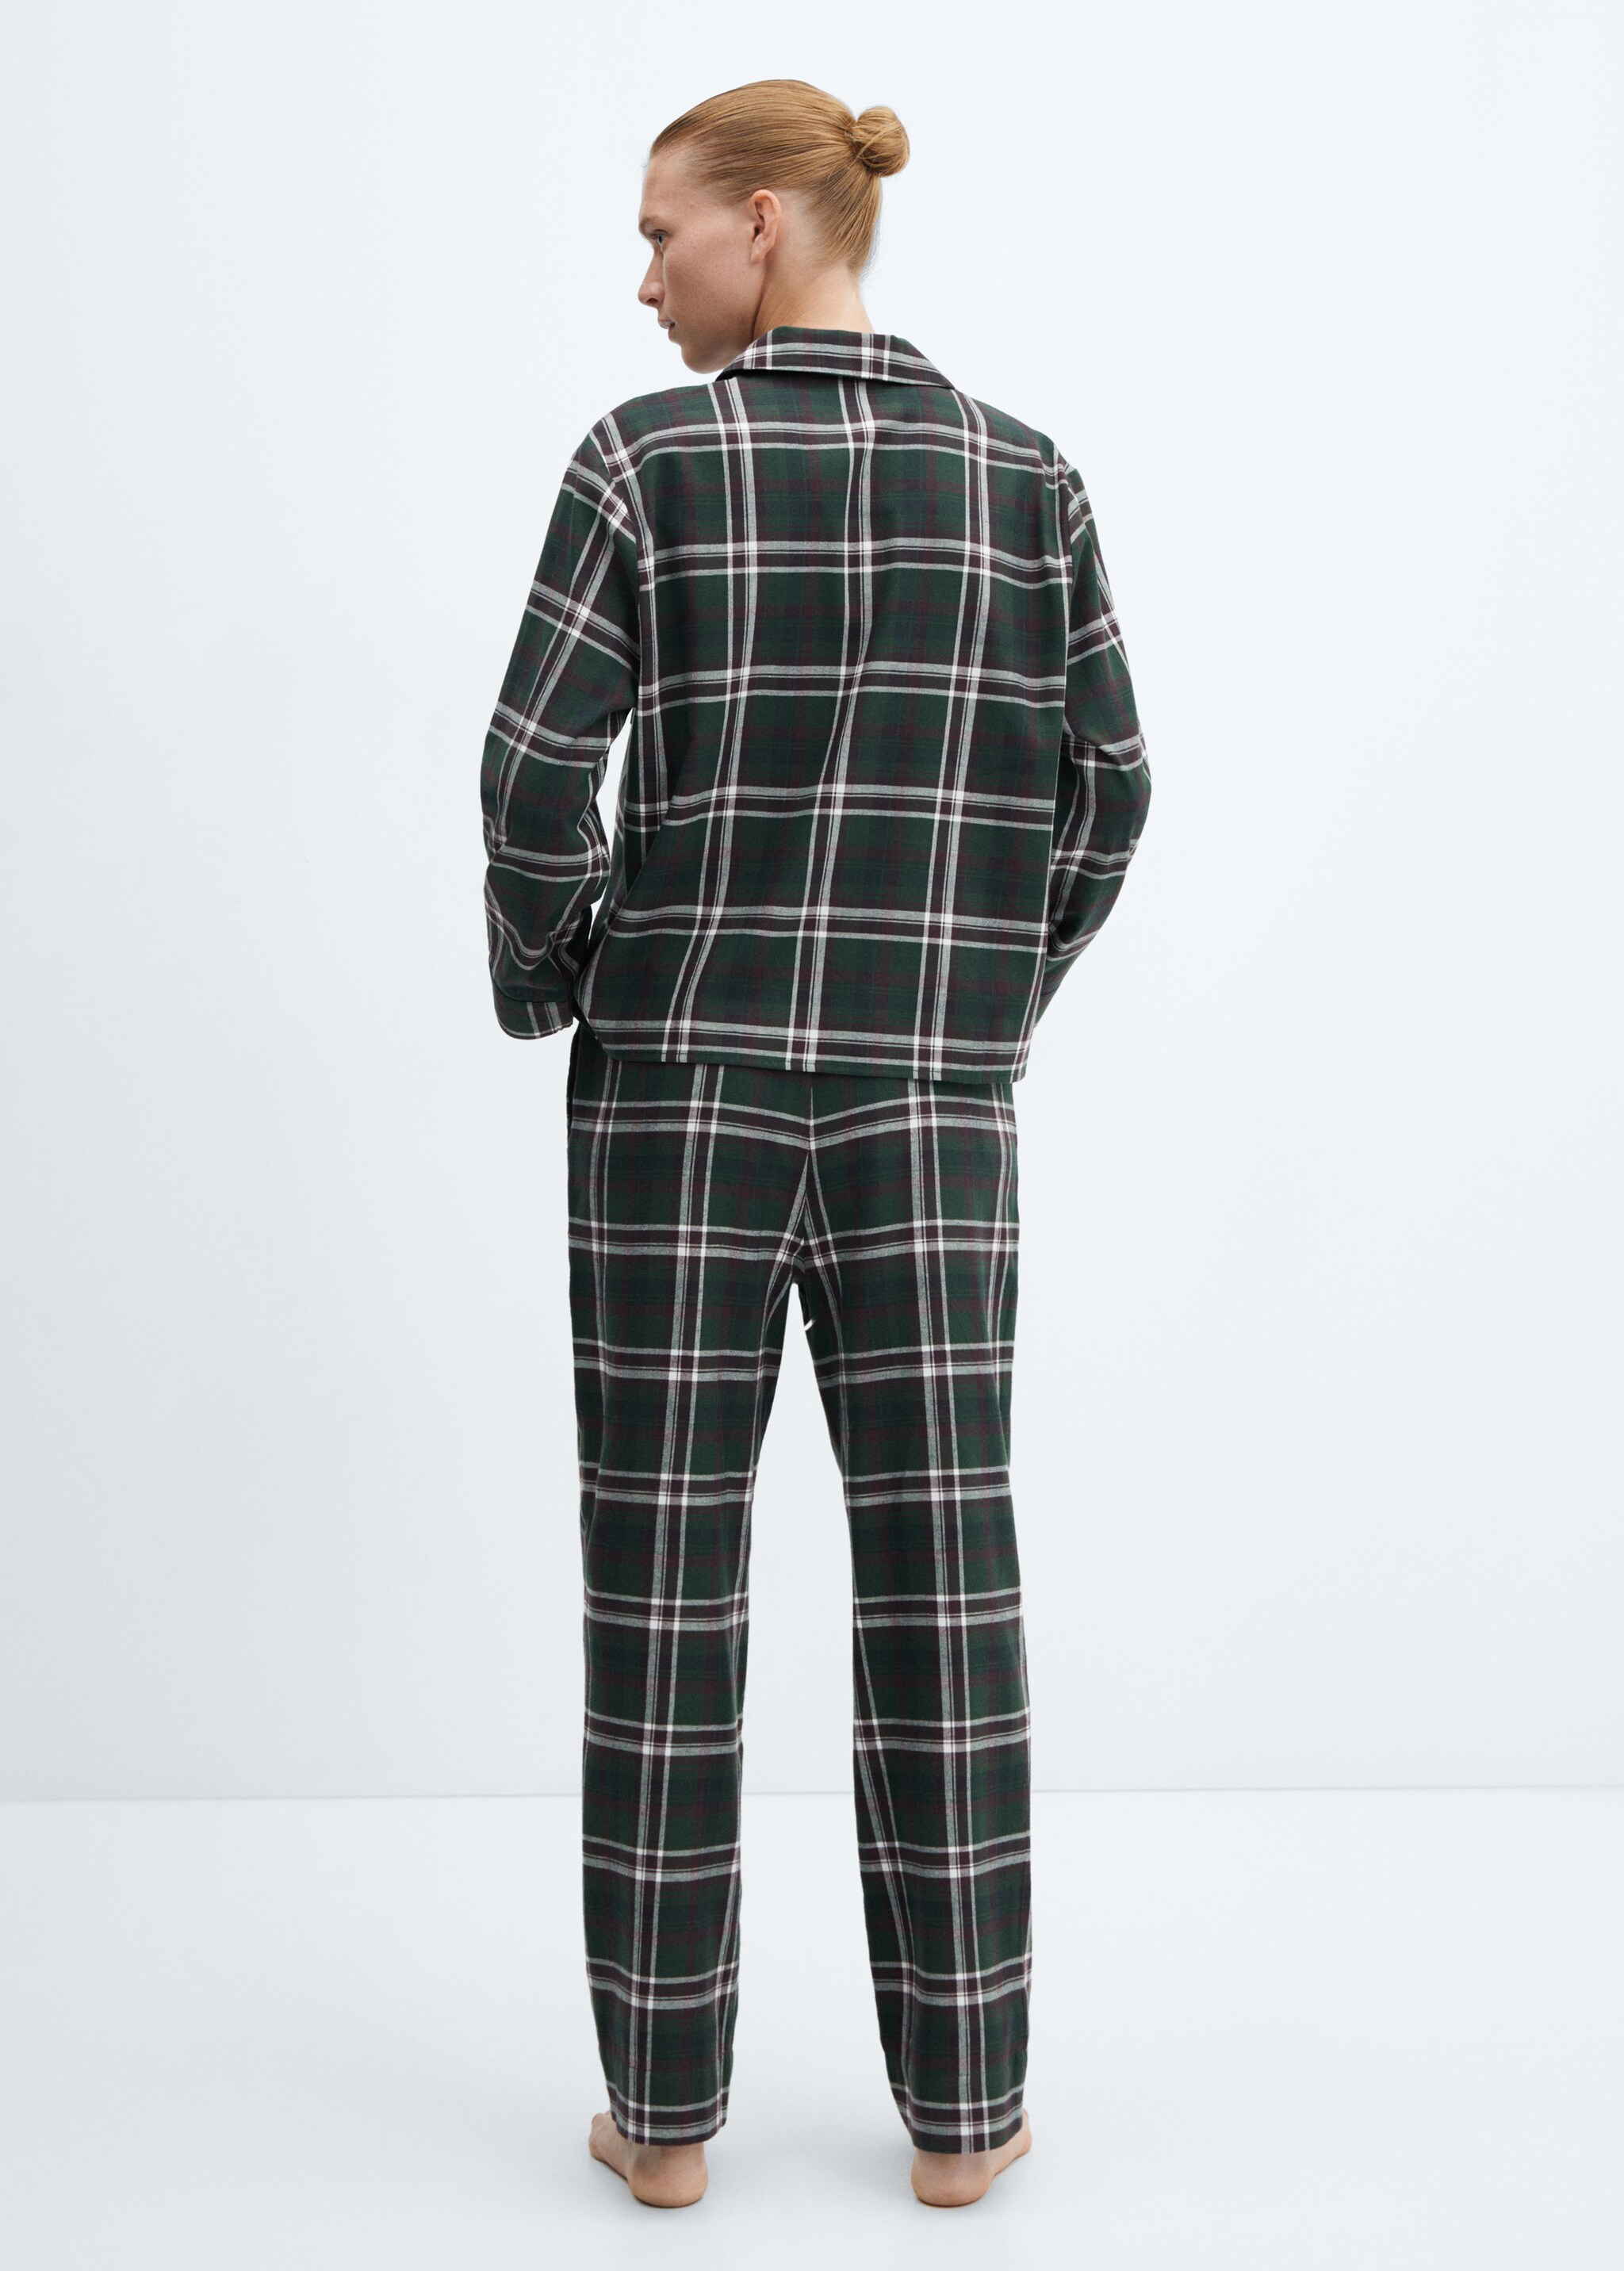 Camisa pijama algodón franela - Reverso del artículo